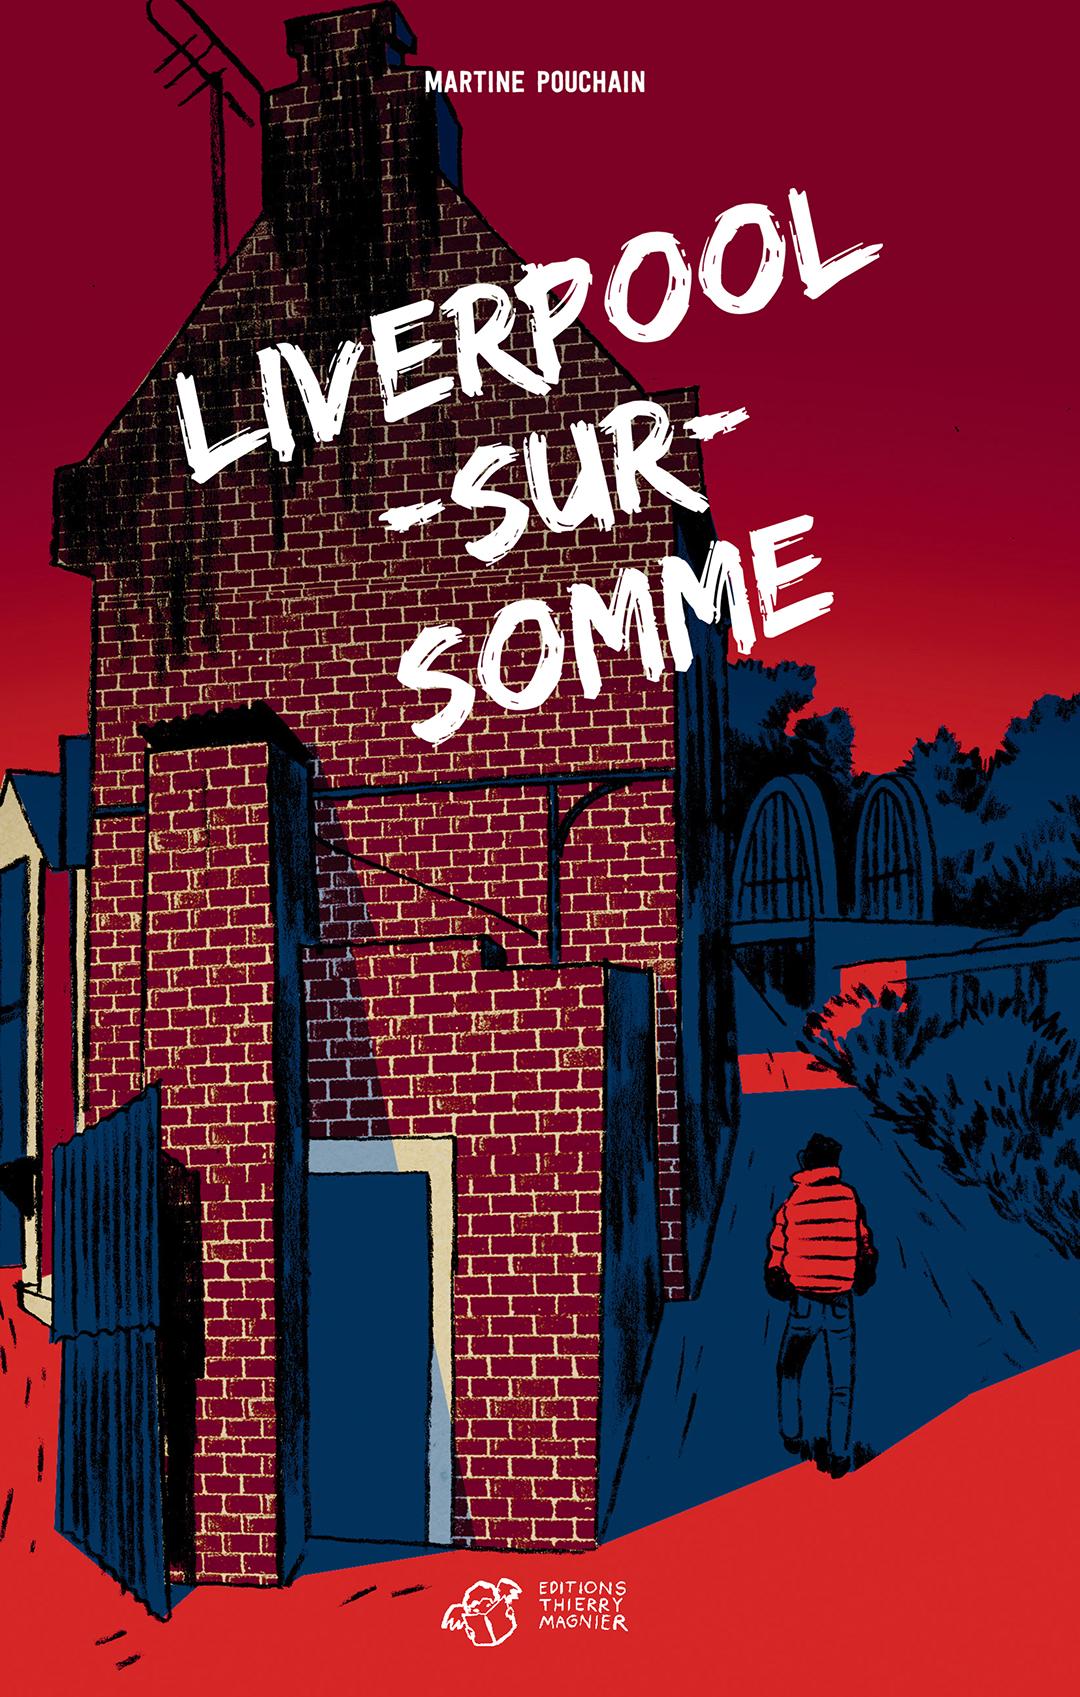 "Liverpool-sur-Somme", un roman de Martine Pouchain en lice pour le prix RTS littérature ados 2025 [Thierry Magnier]